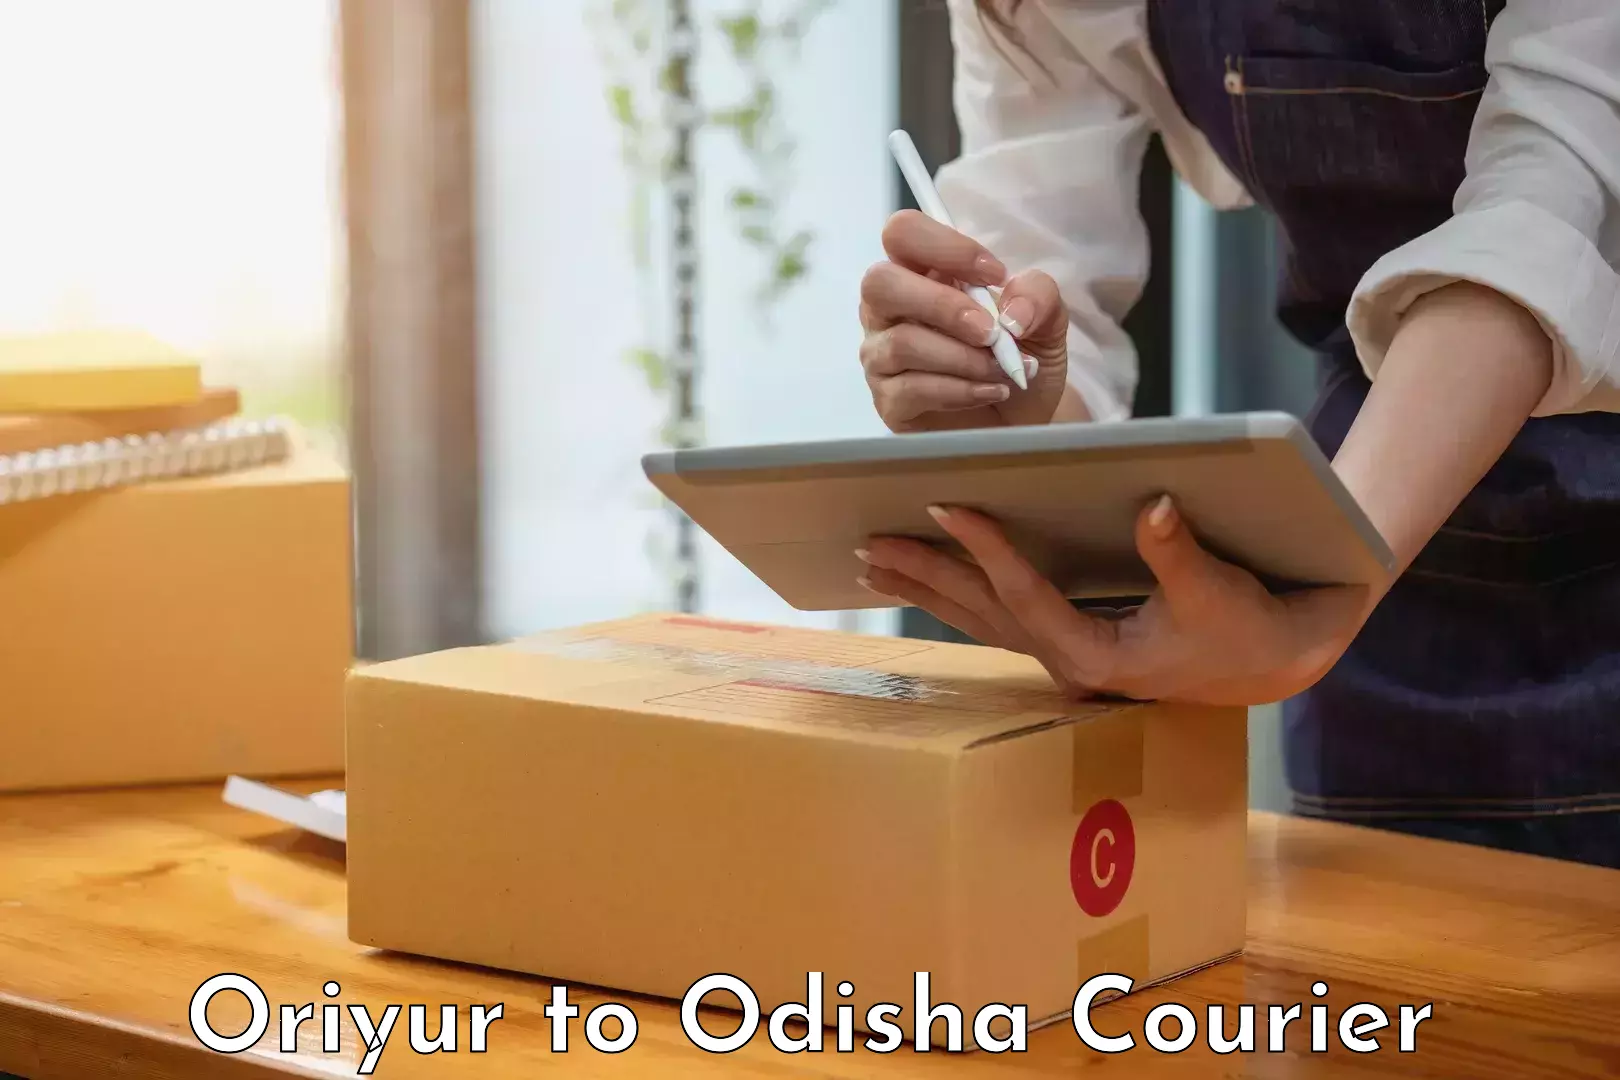 Special handling courier Oriyur to Dandisahi